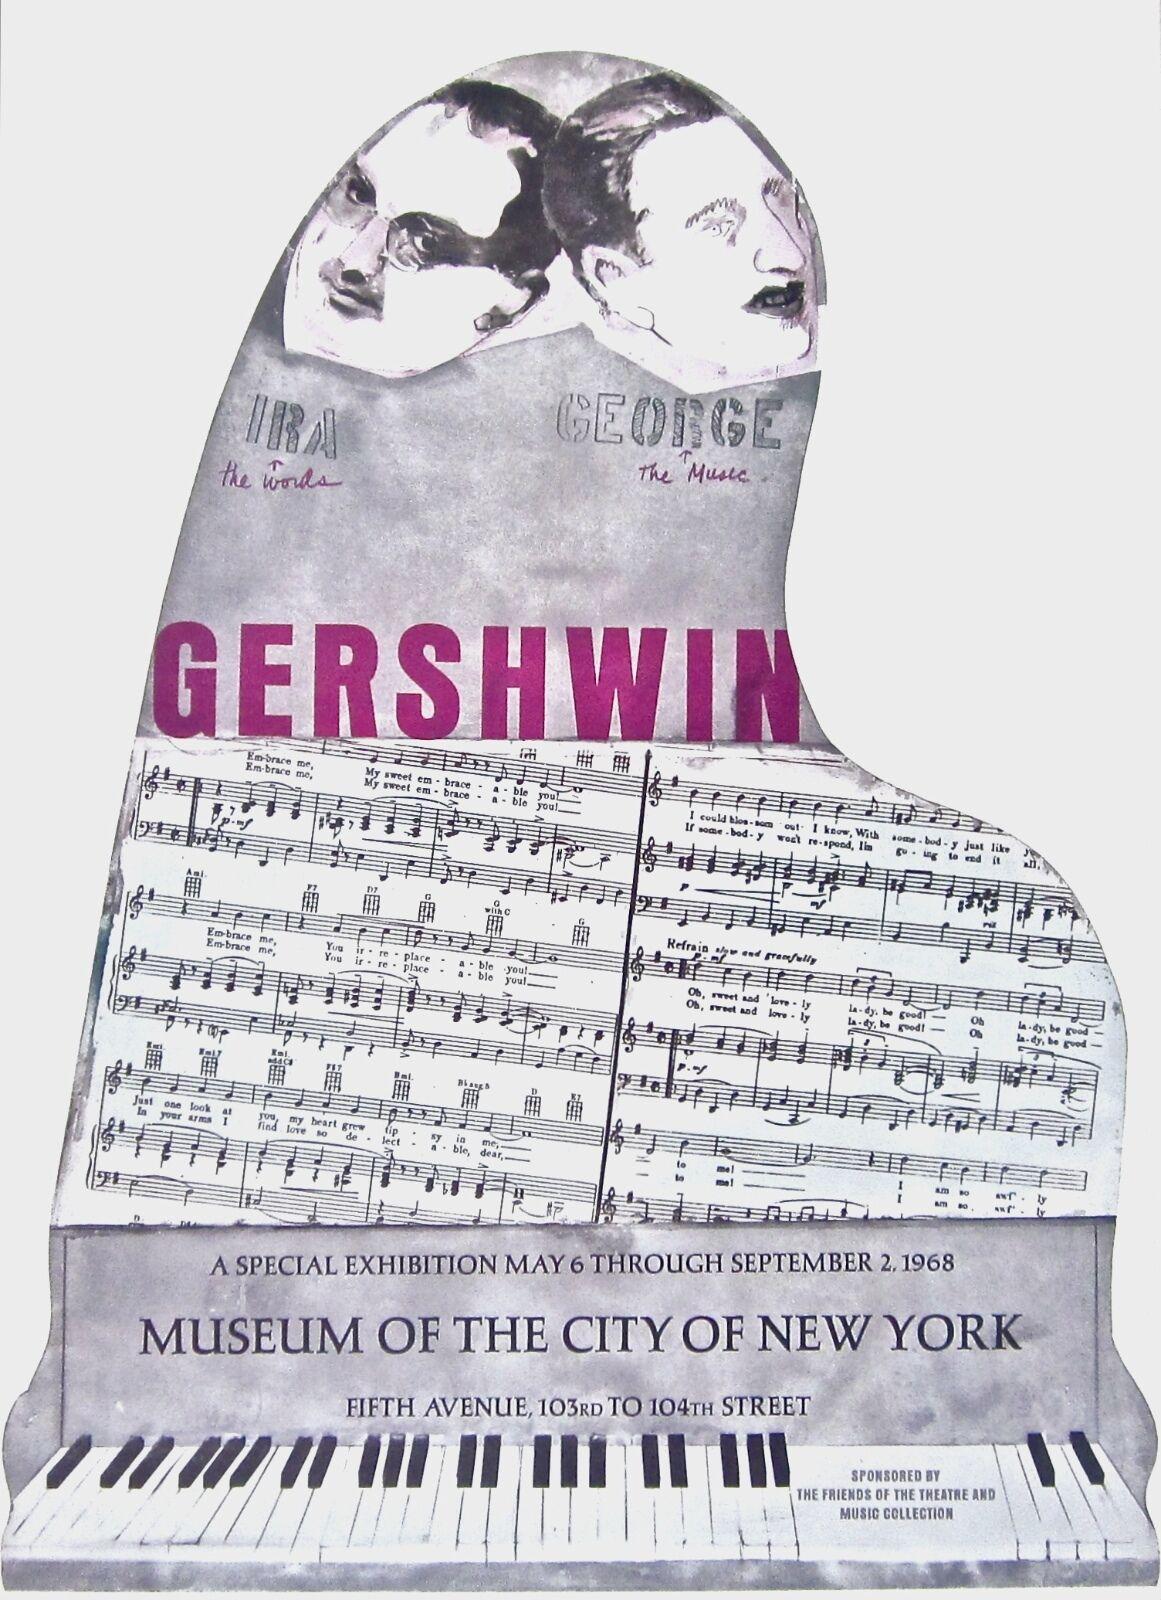 Künstler: Nach Larry Rivers (1923-2002)
Titel: Gershwin Brothers, Ausstellungsplakat
Jahr: 1966
Medium: Lithographie auf Velinpapier
Größe: 37 x 26 Zoll
Zustand: Ausgezeichnet
Anmerkungen: Herausgegeben vom Museum of the City of New York

LARRY